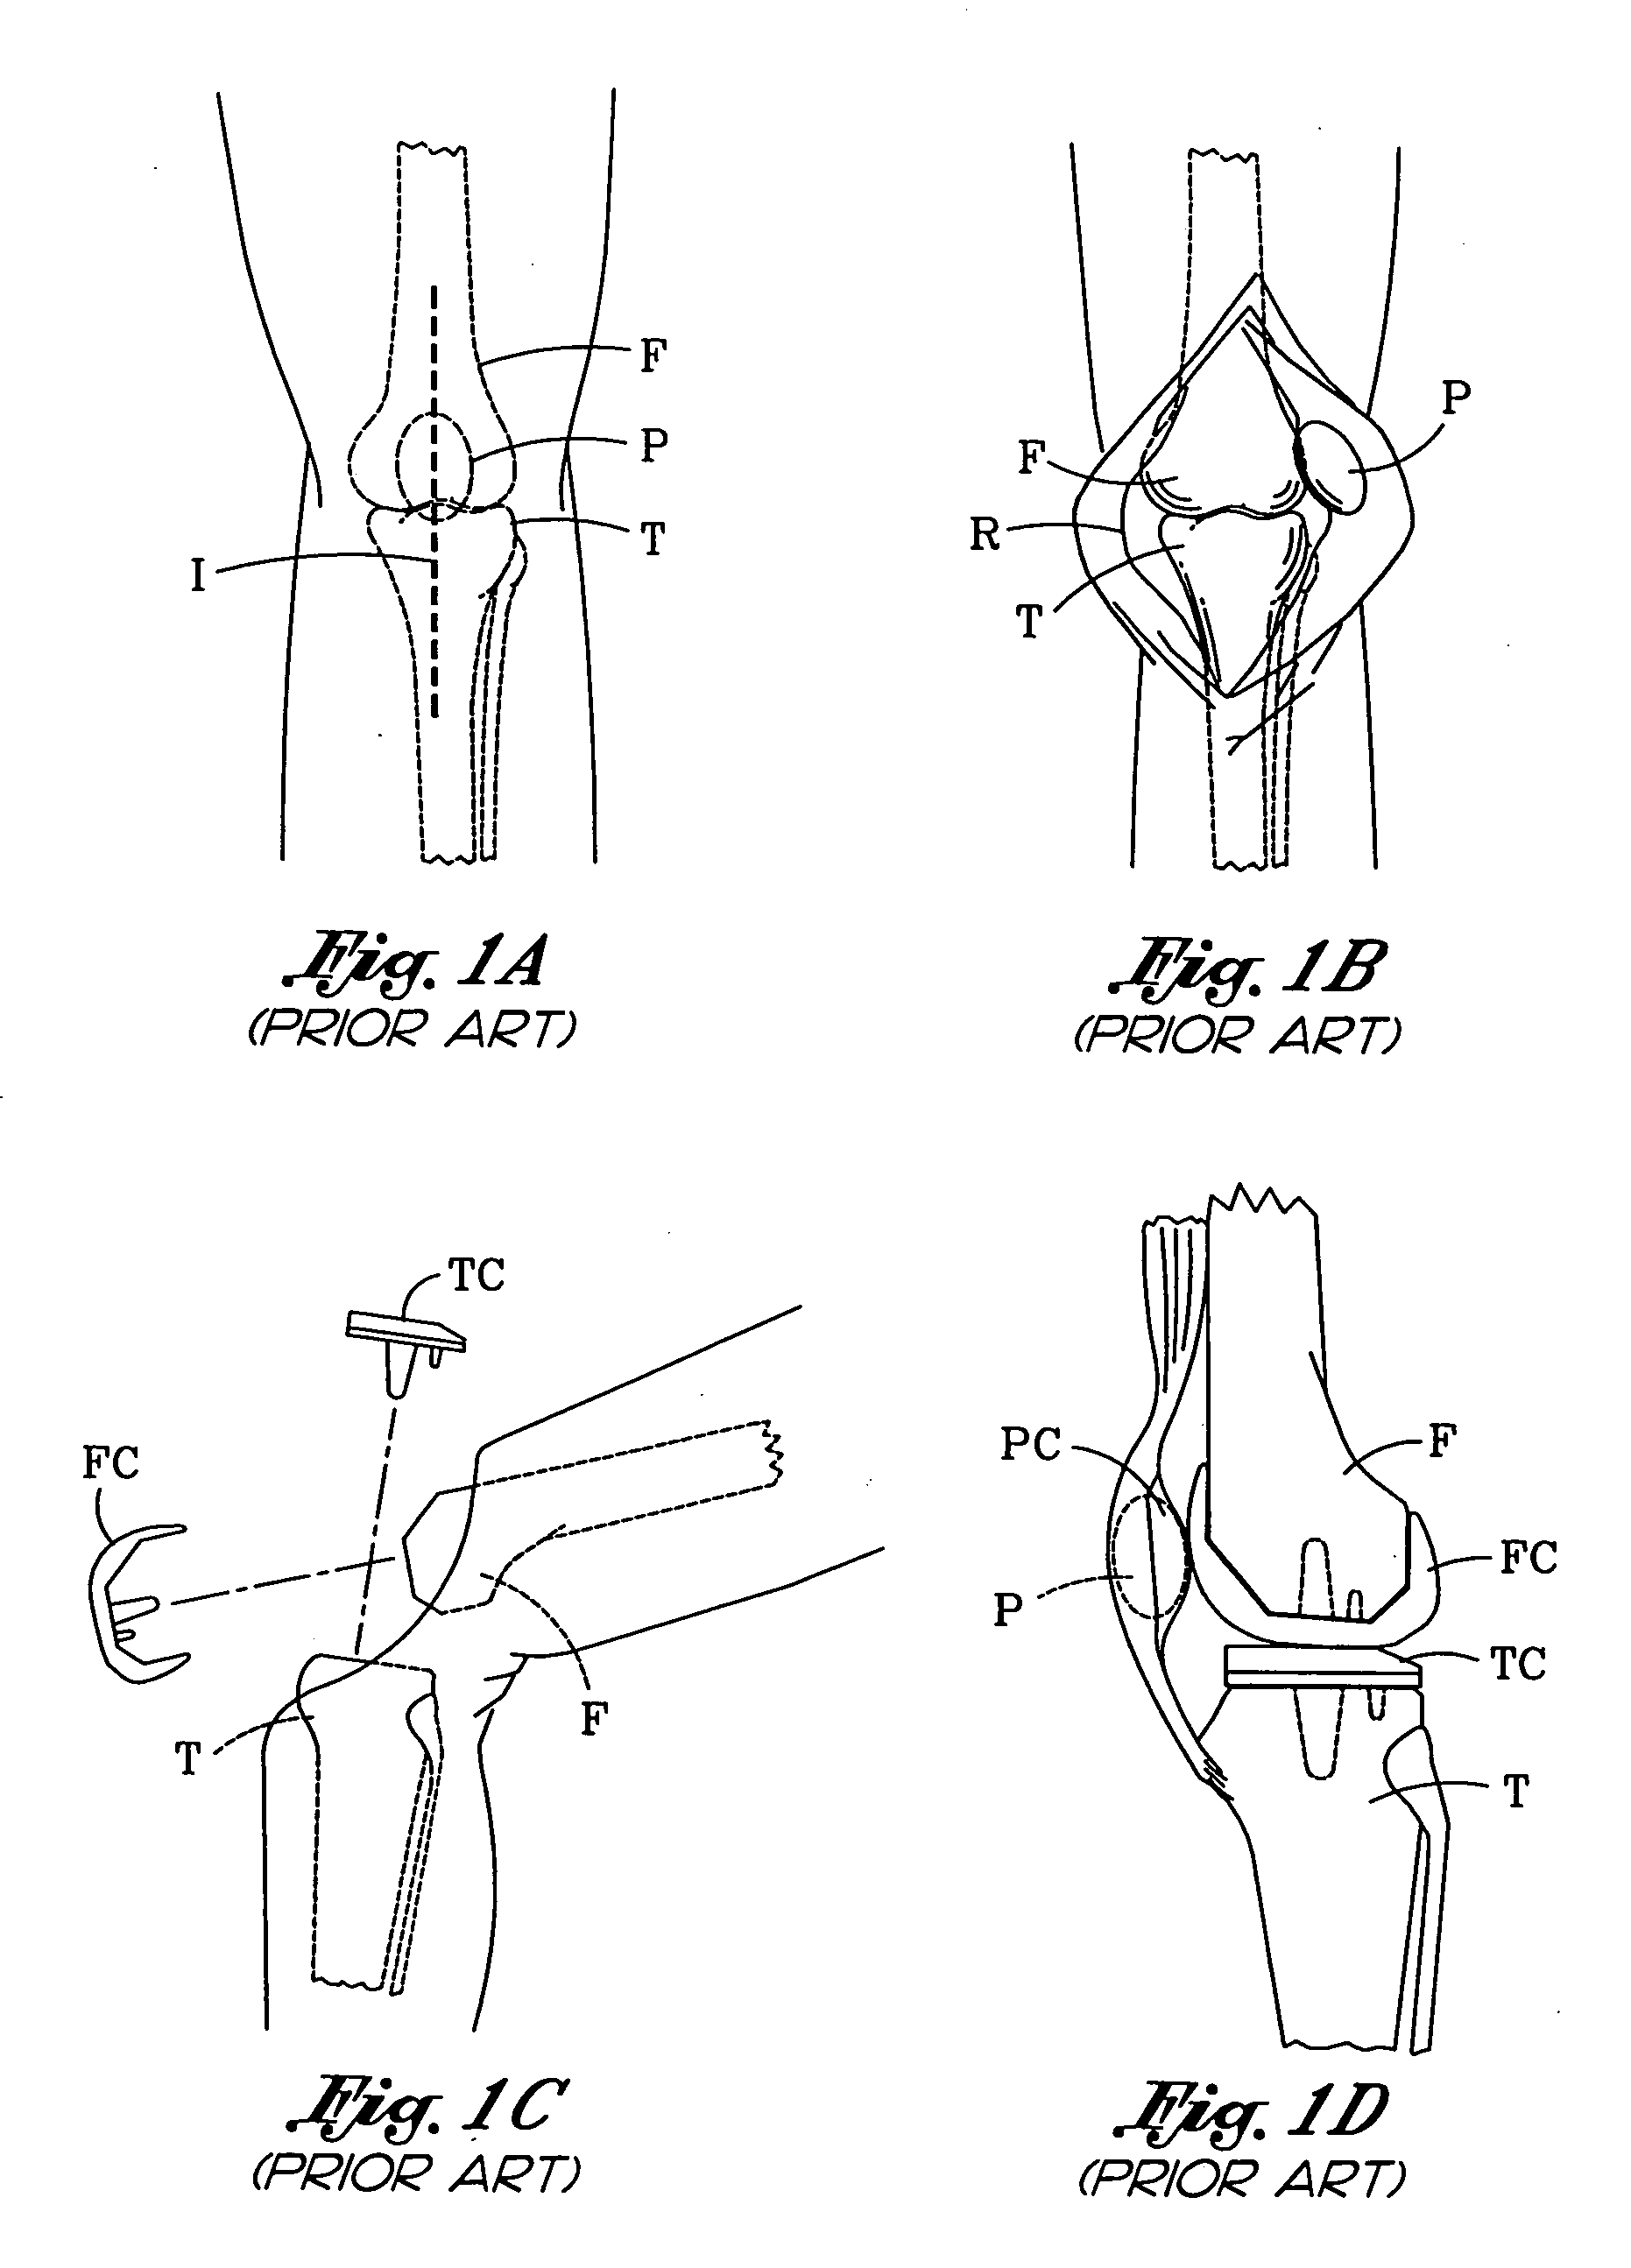 Patellar cutting guide